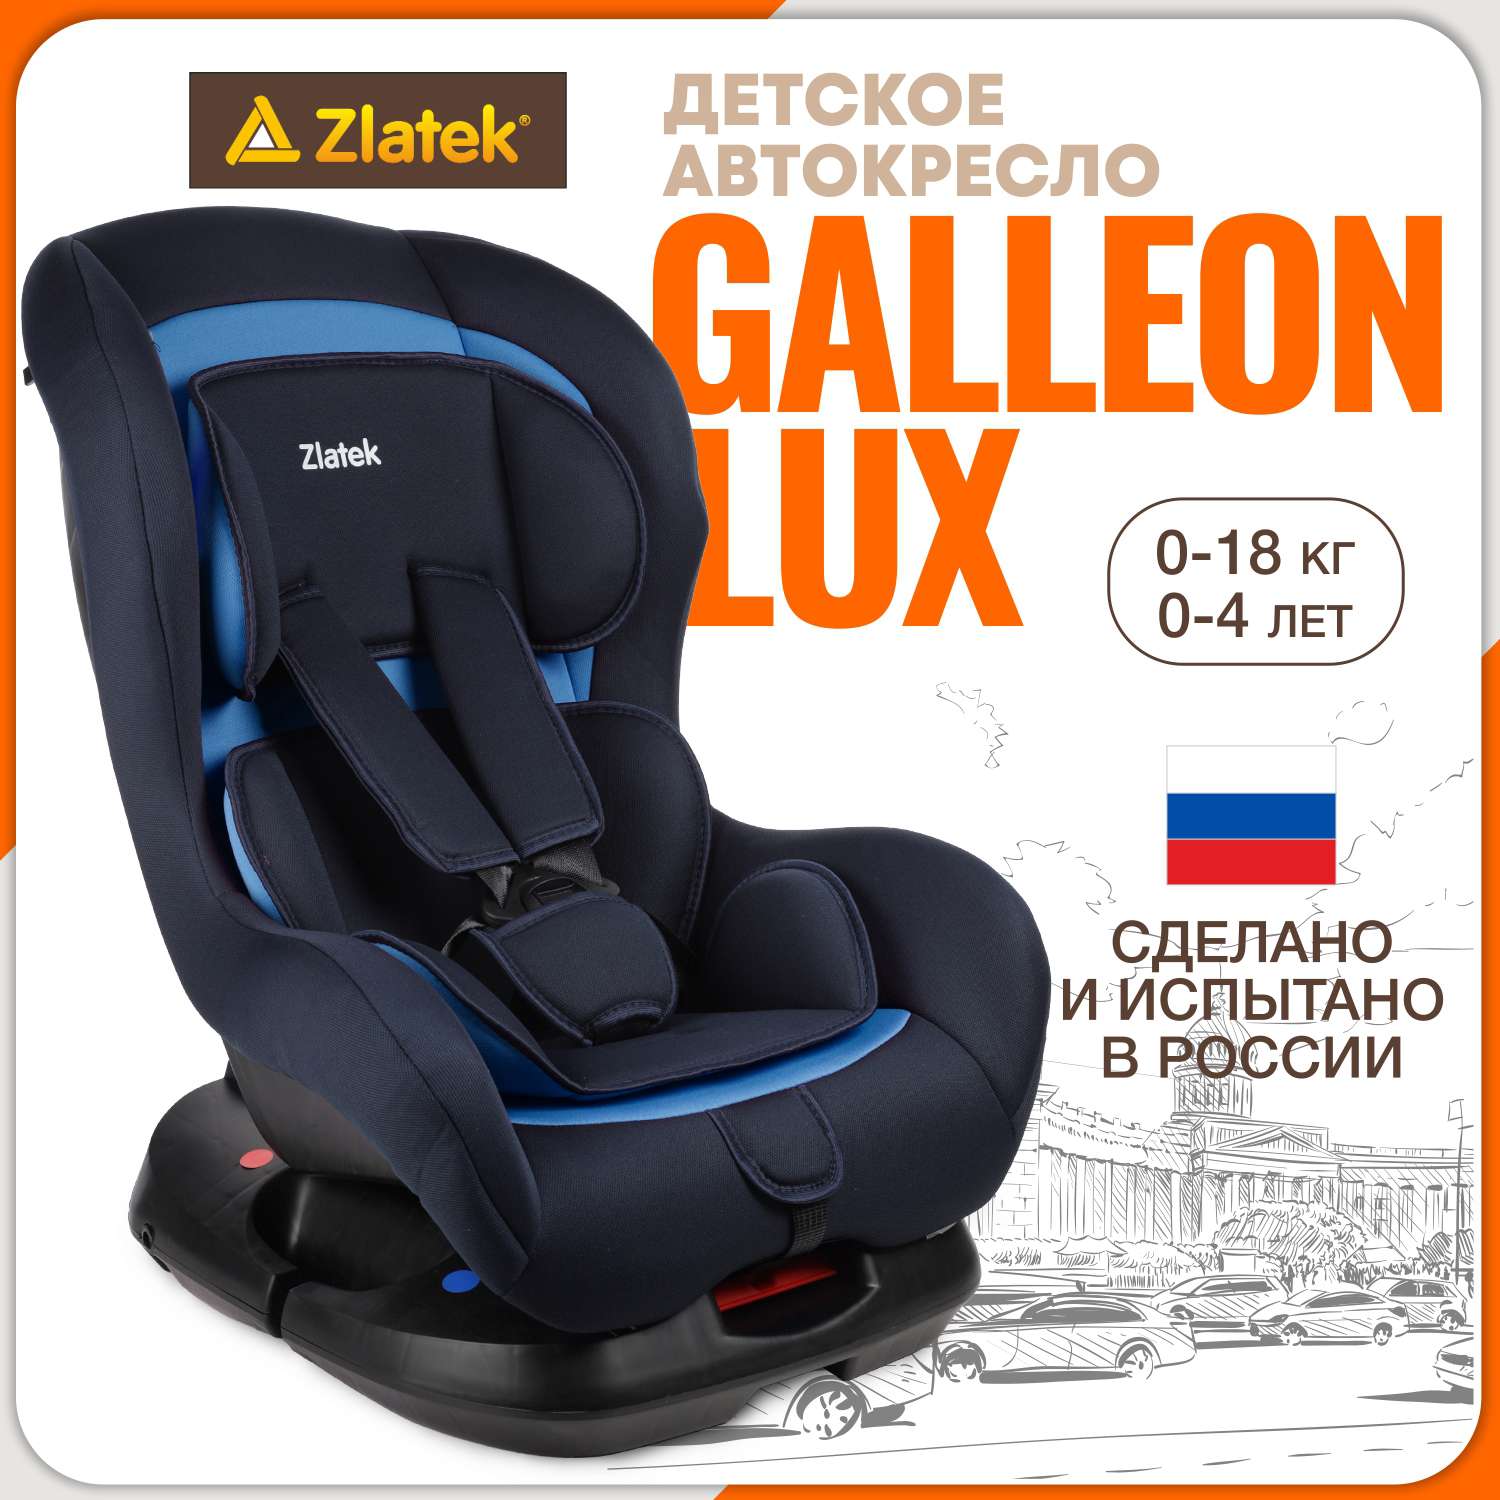 Детское автокресло ZLATEK Galleon Lux индиго - фото 1